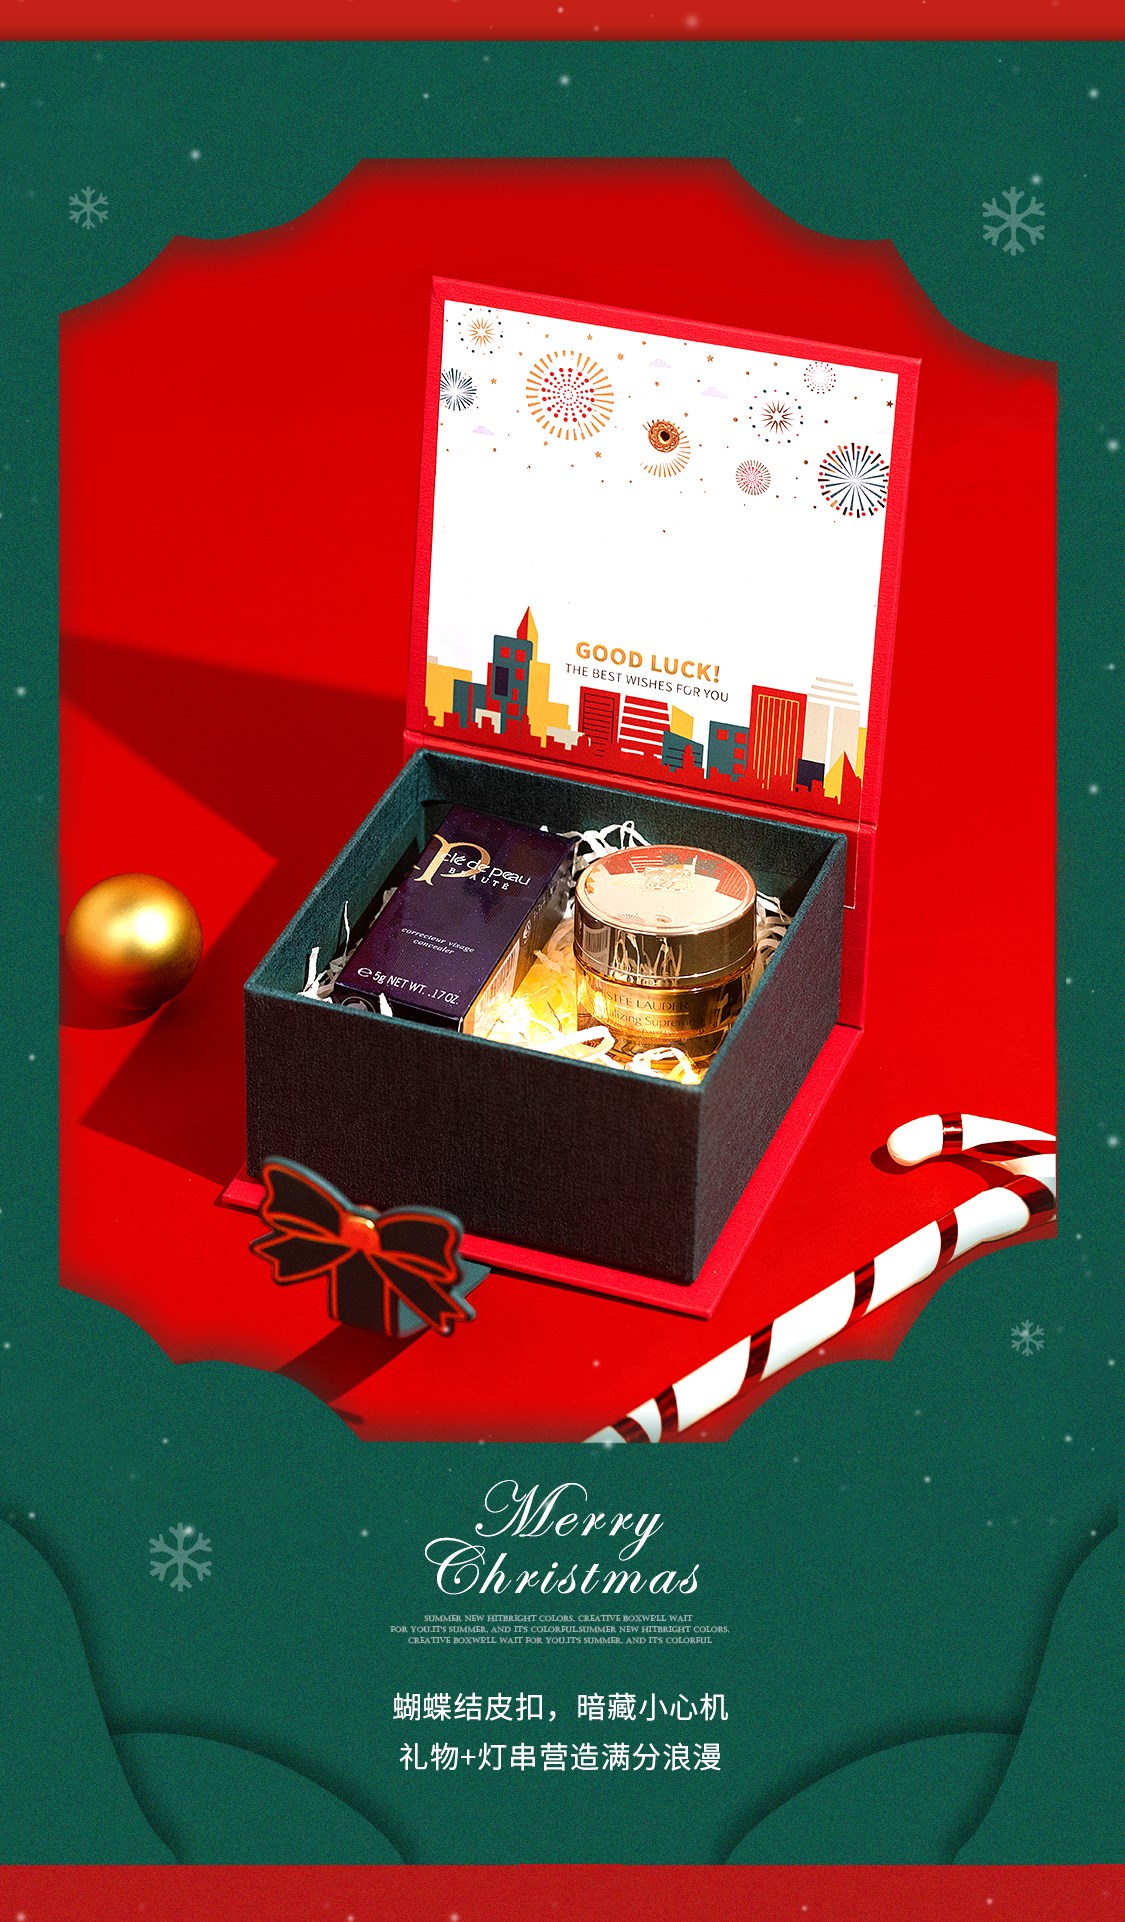 【方森园】圣诞礼盒包装设计——《寻梦奇妙夜》